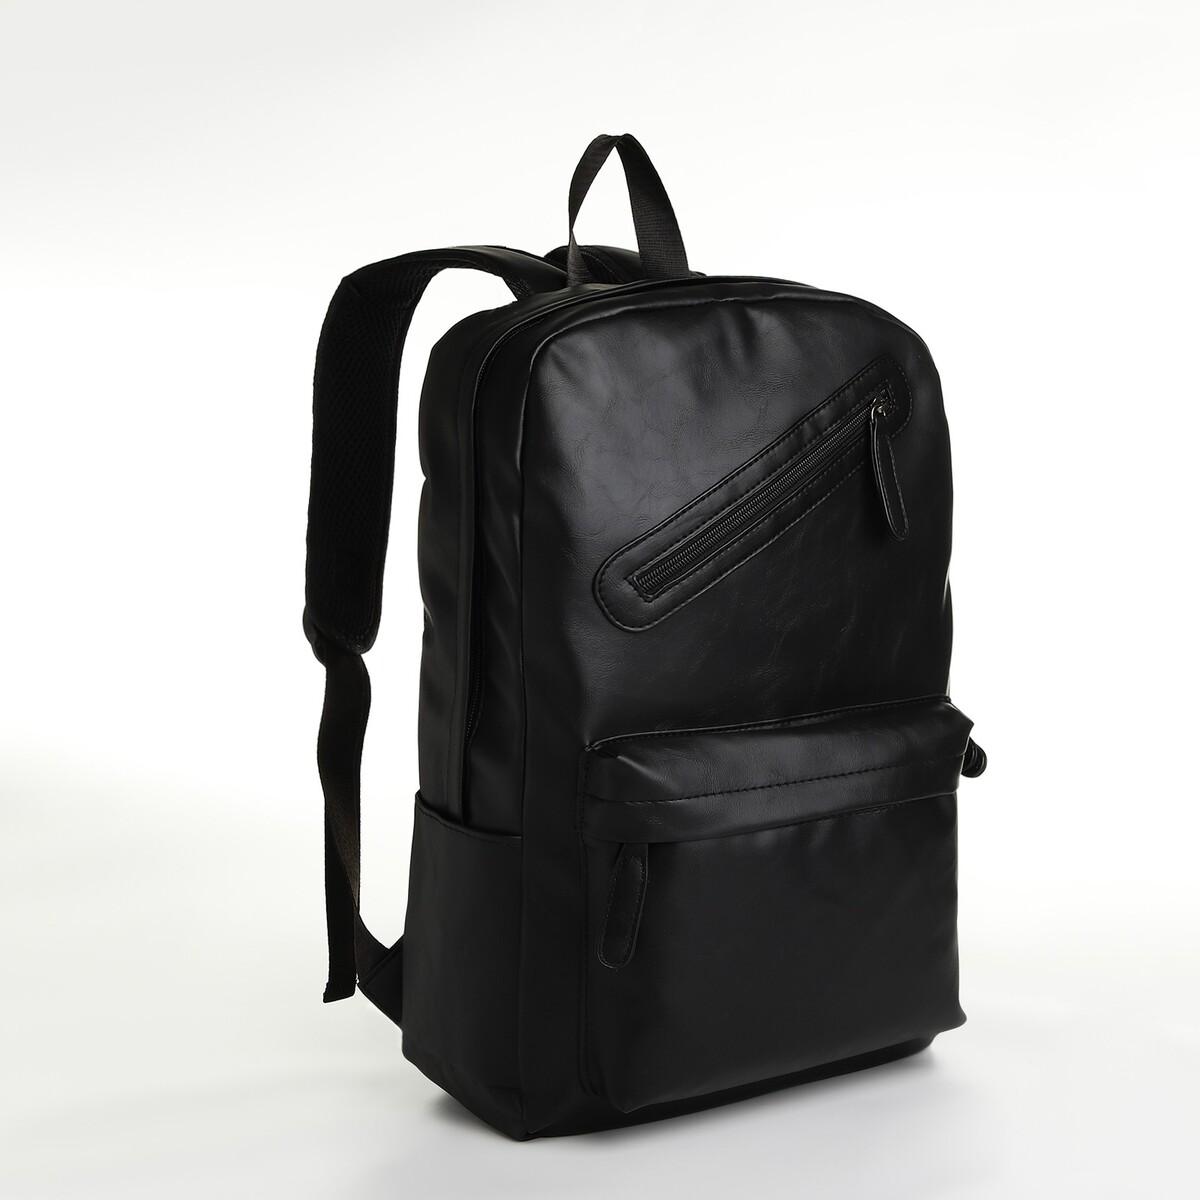 Рюкзак городской из искусственной кожи на молнии, 3 кармана, цвет черный рюкзак городской из текстиля на молнии 4 кармана